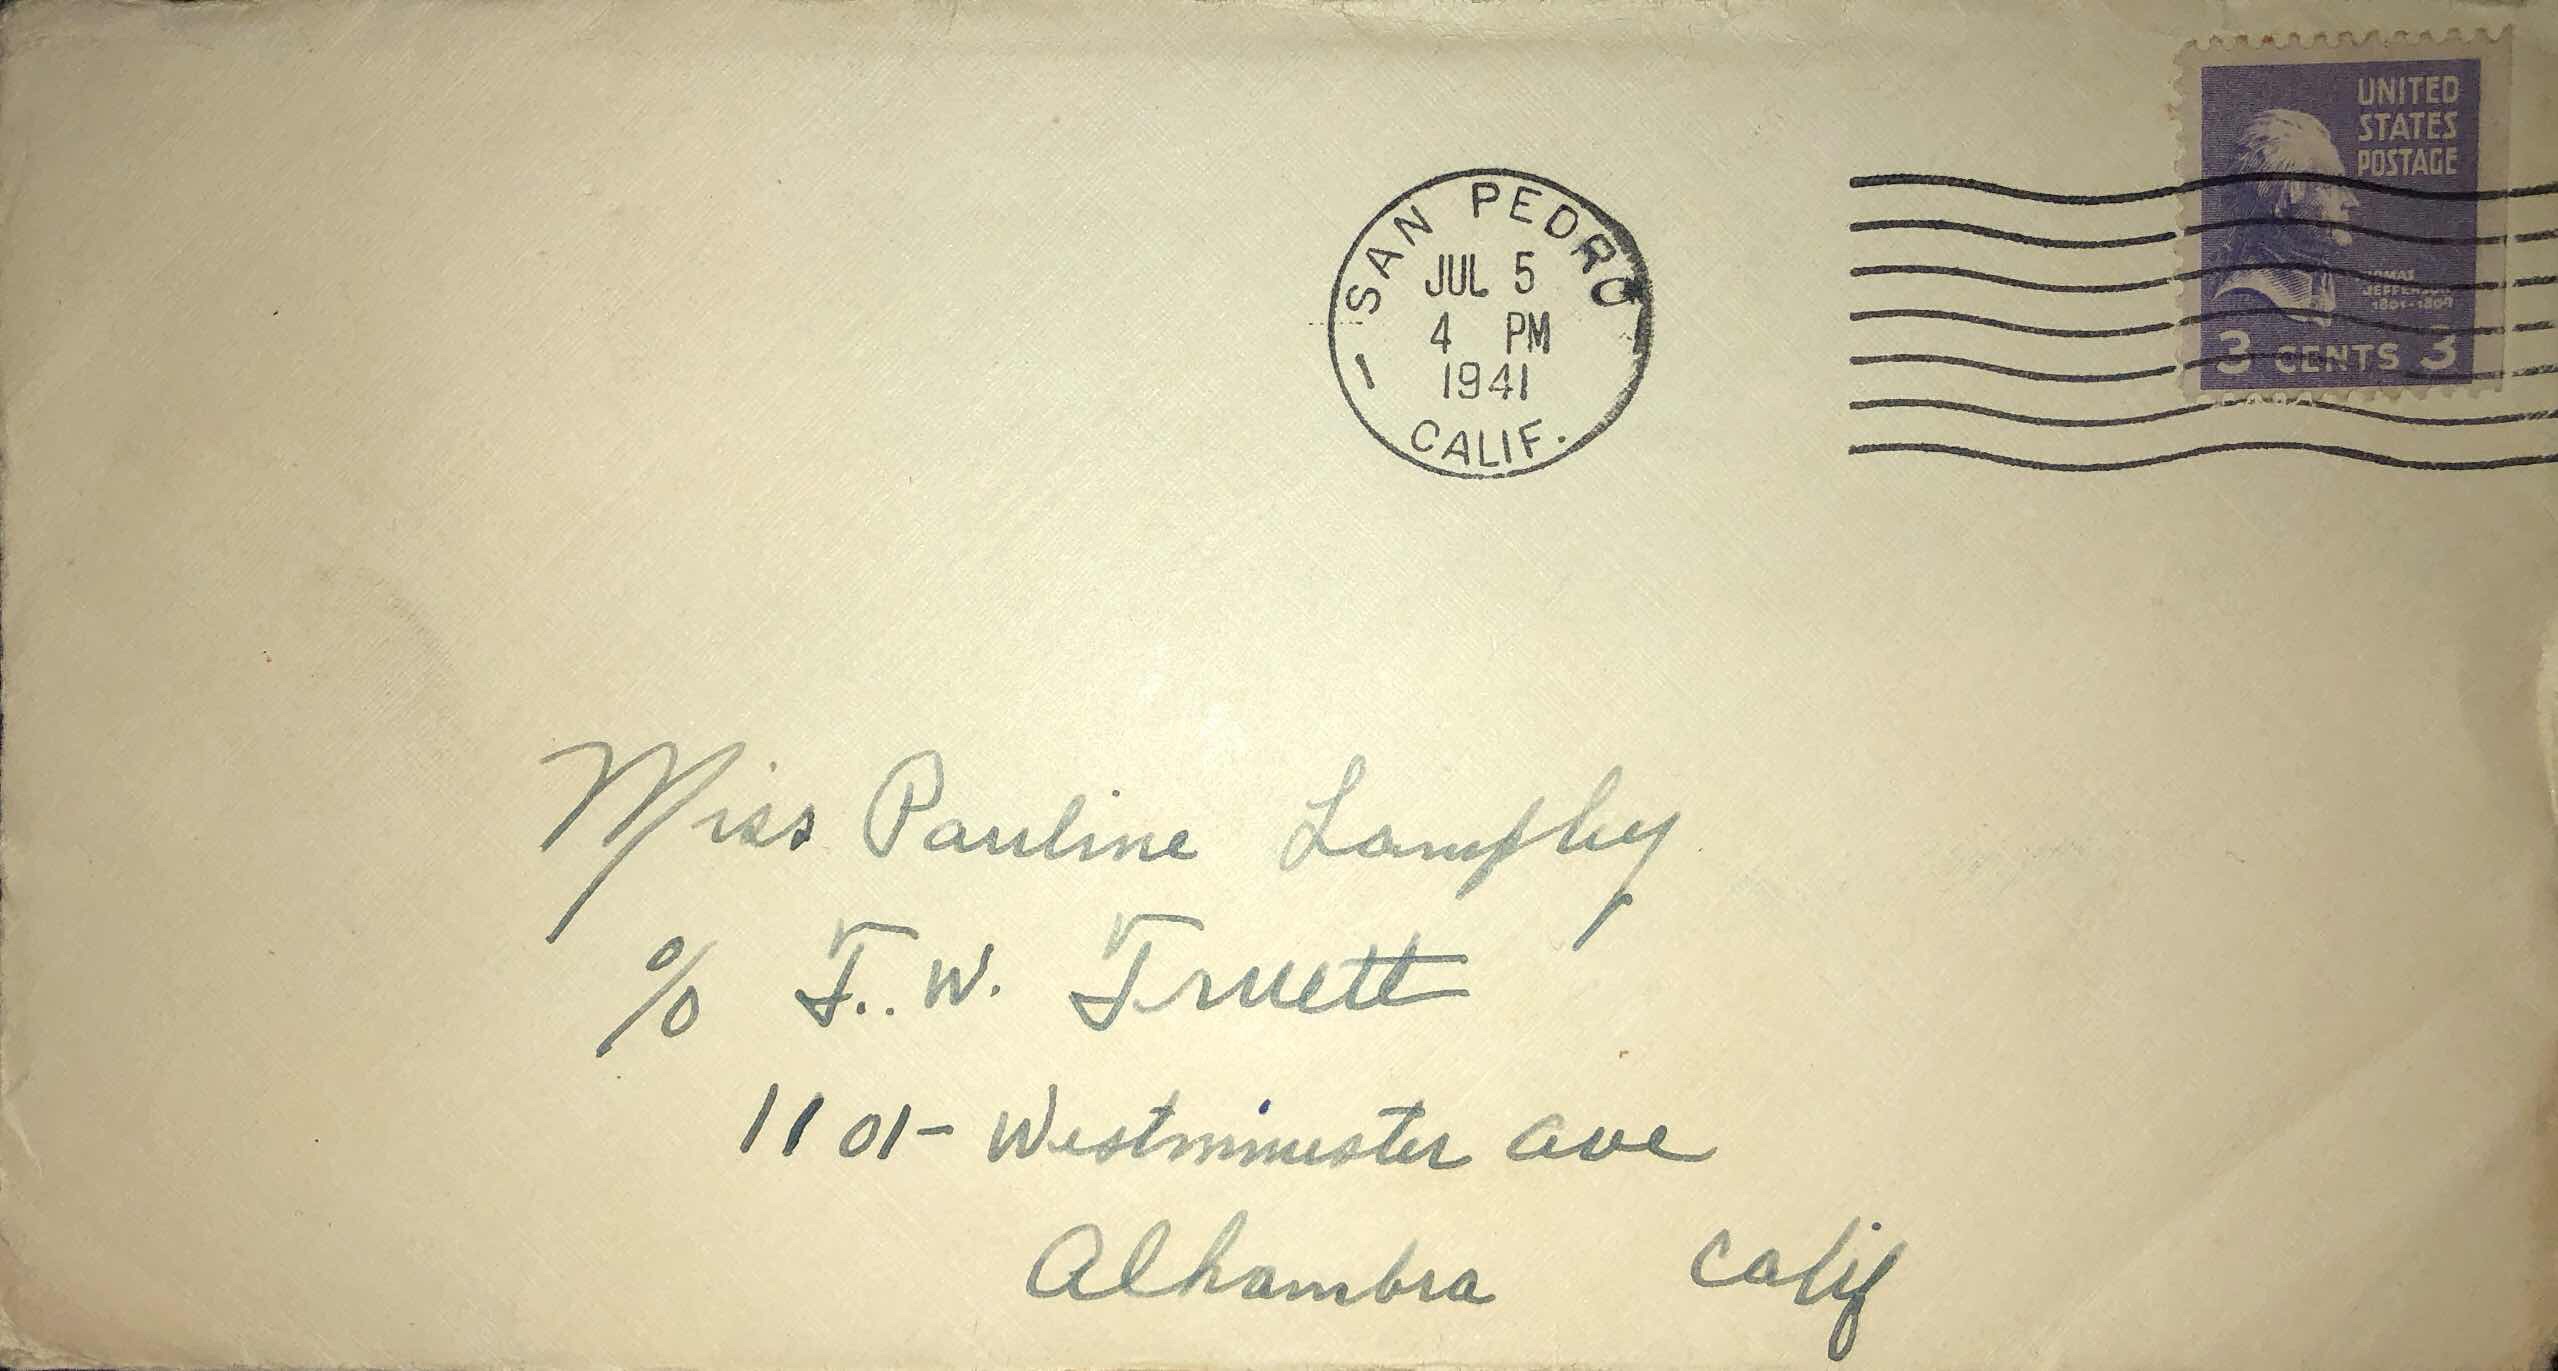 July 5th, 1941 Dear Pauline